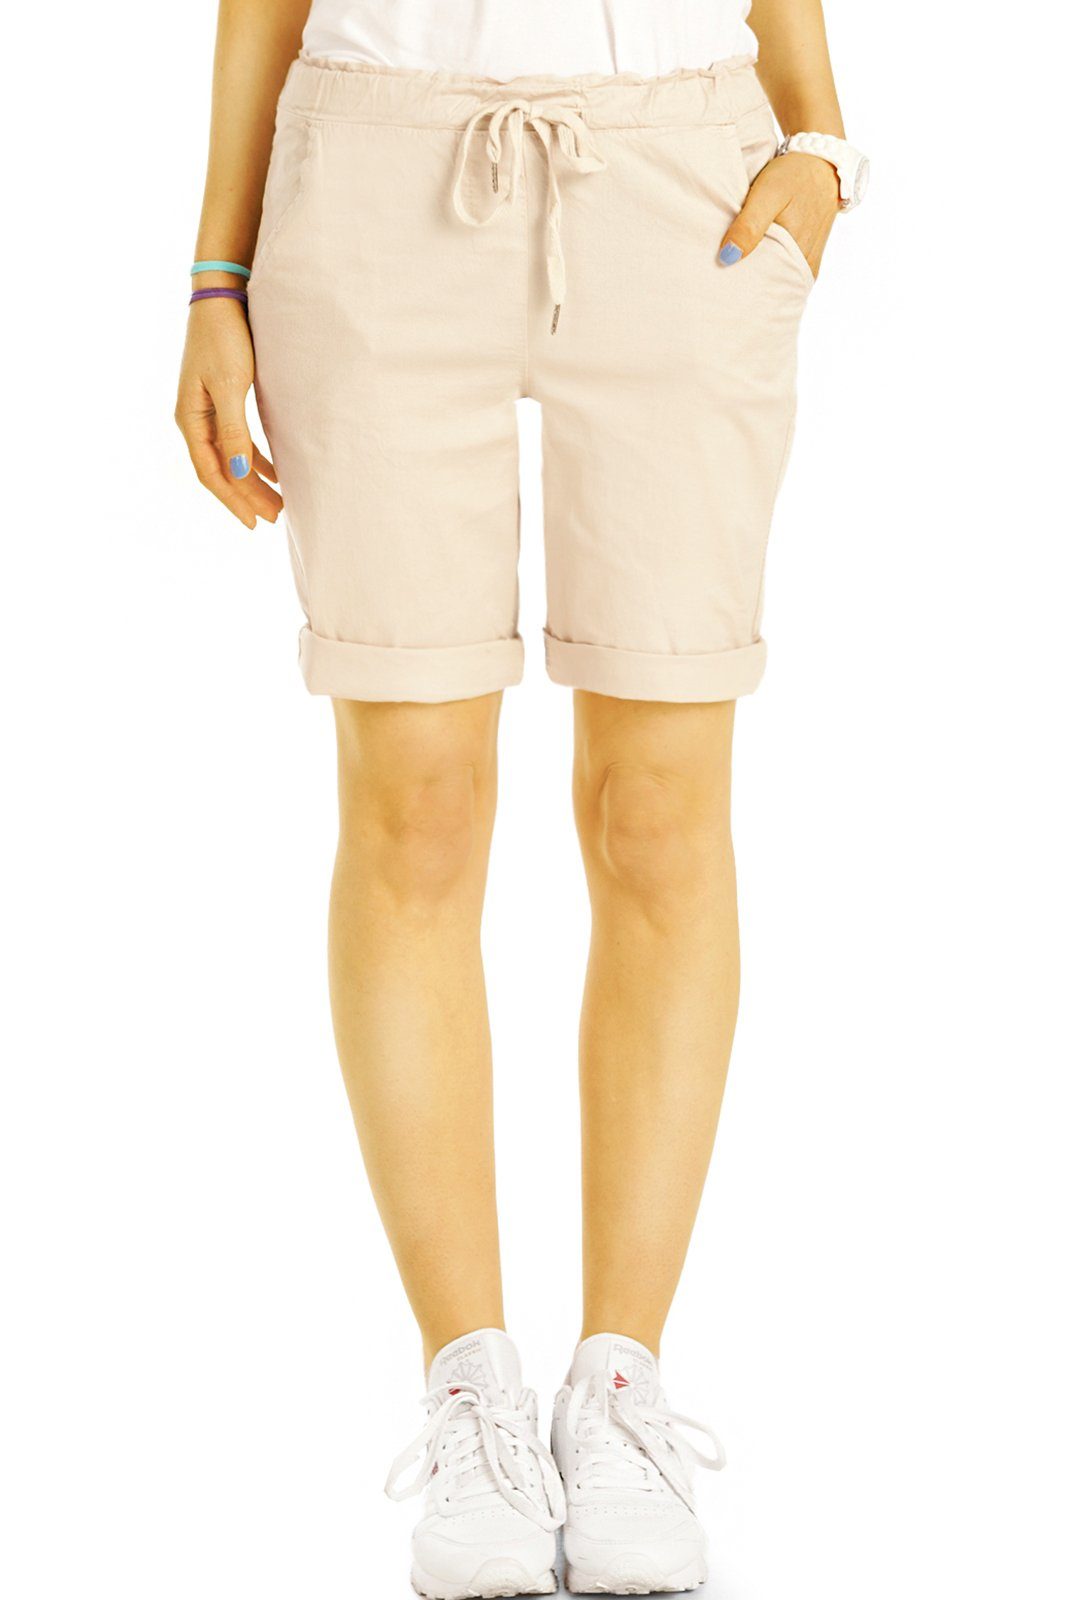 be styled Shorts Chino Stoff Shorts - Kurze lockere Hosen mit Kordelzug - Damen - h28a mit Kordelzug, in Unifarben, mit elastischem Bund beige